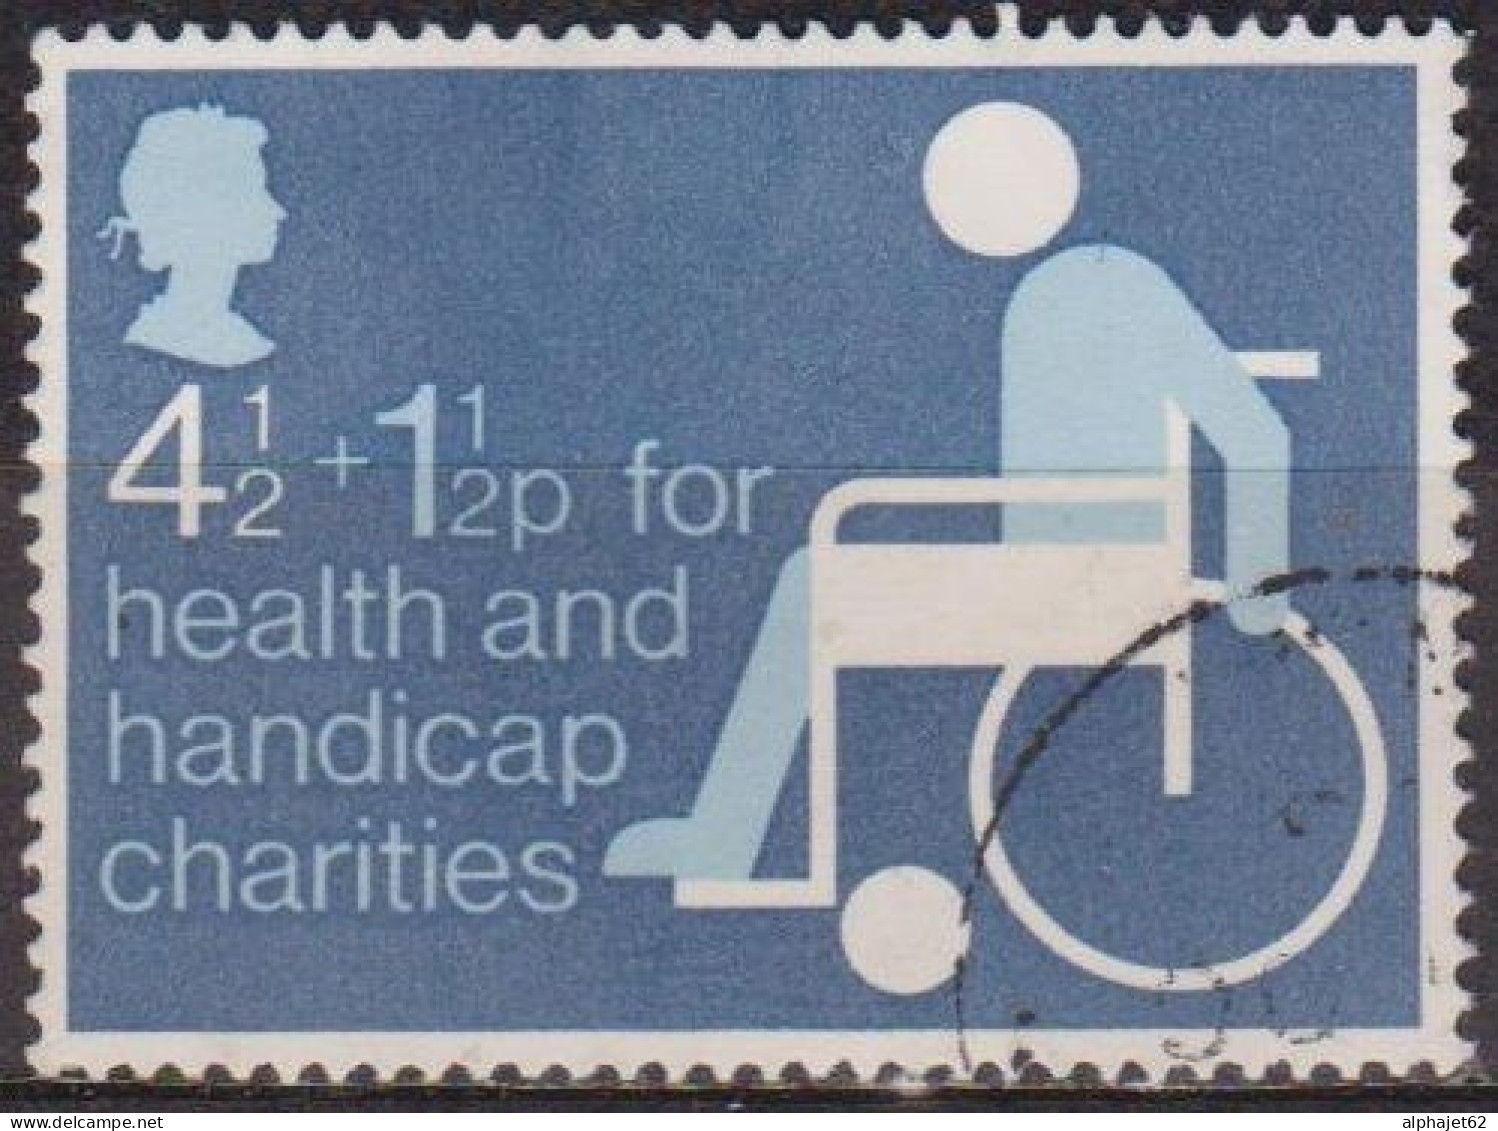 Bienfaisance - GRANDE BRETAGNE - Au Profit Des Handicapés - N° 746 - 1975 - Usados